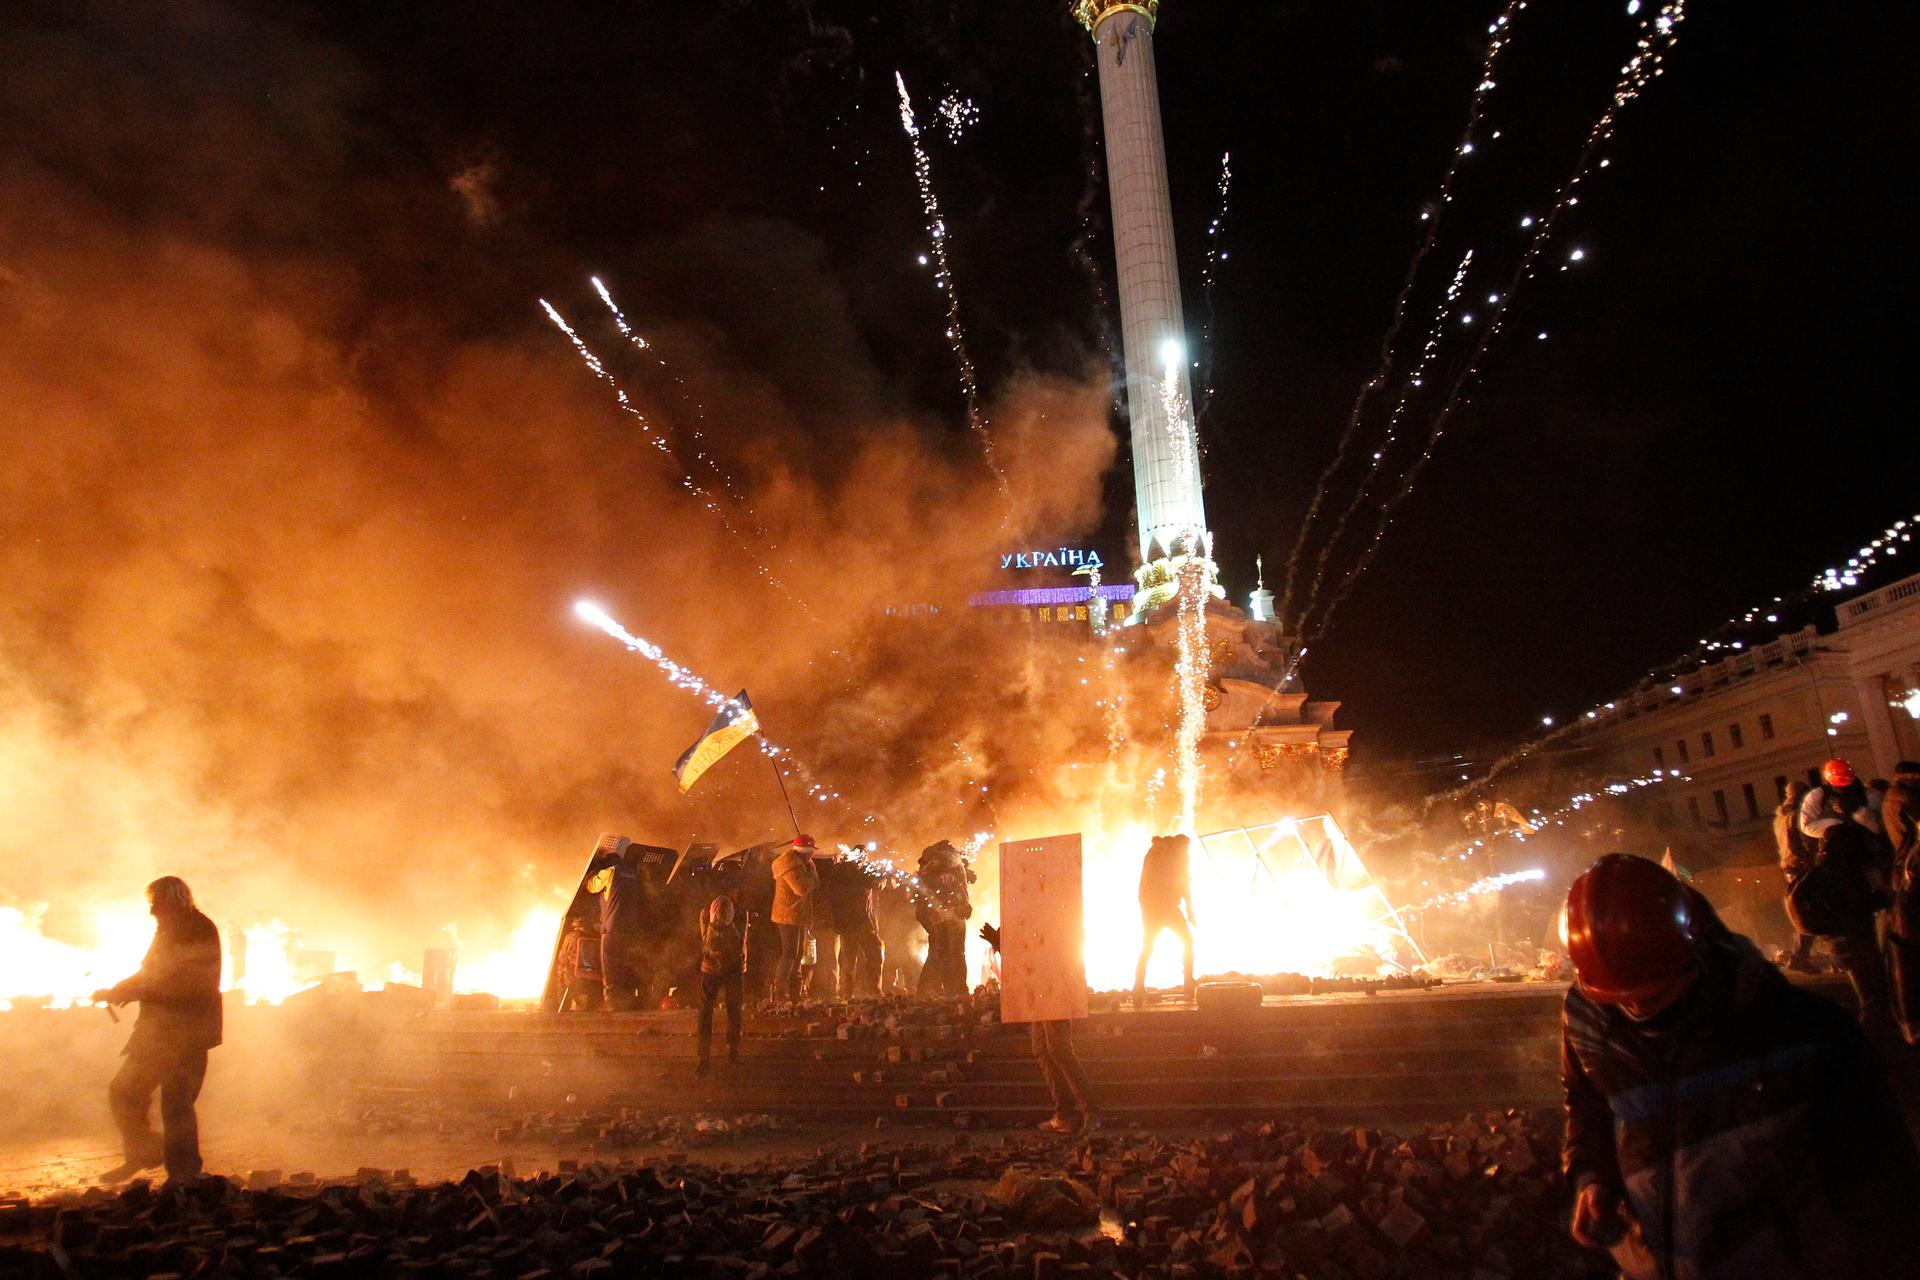 Feb 18 violence in Kiev